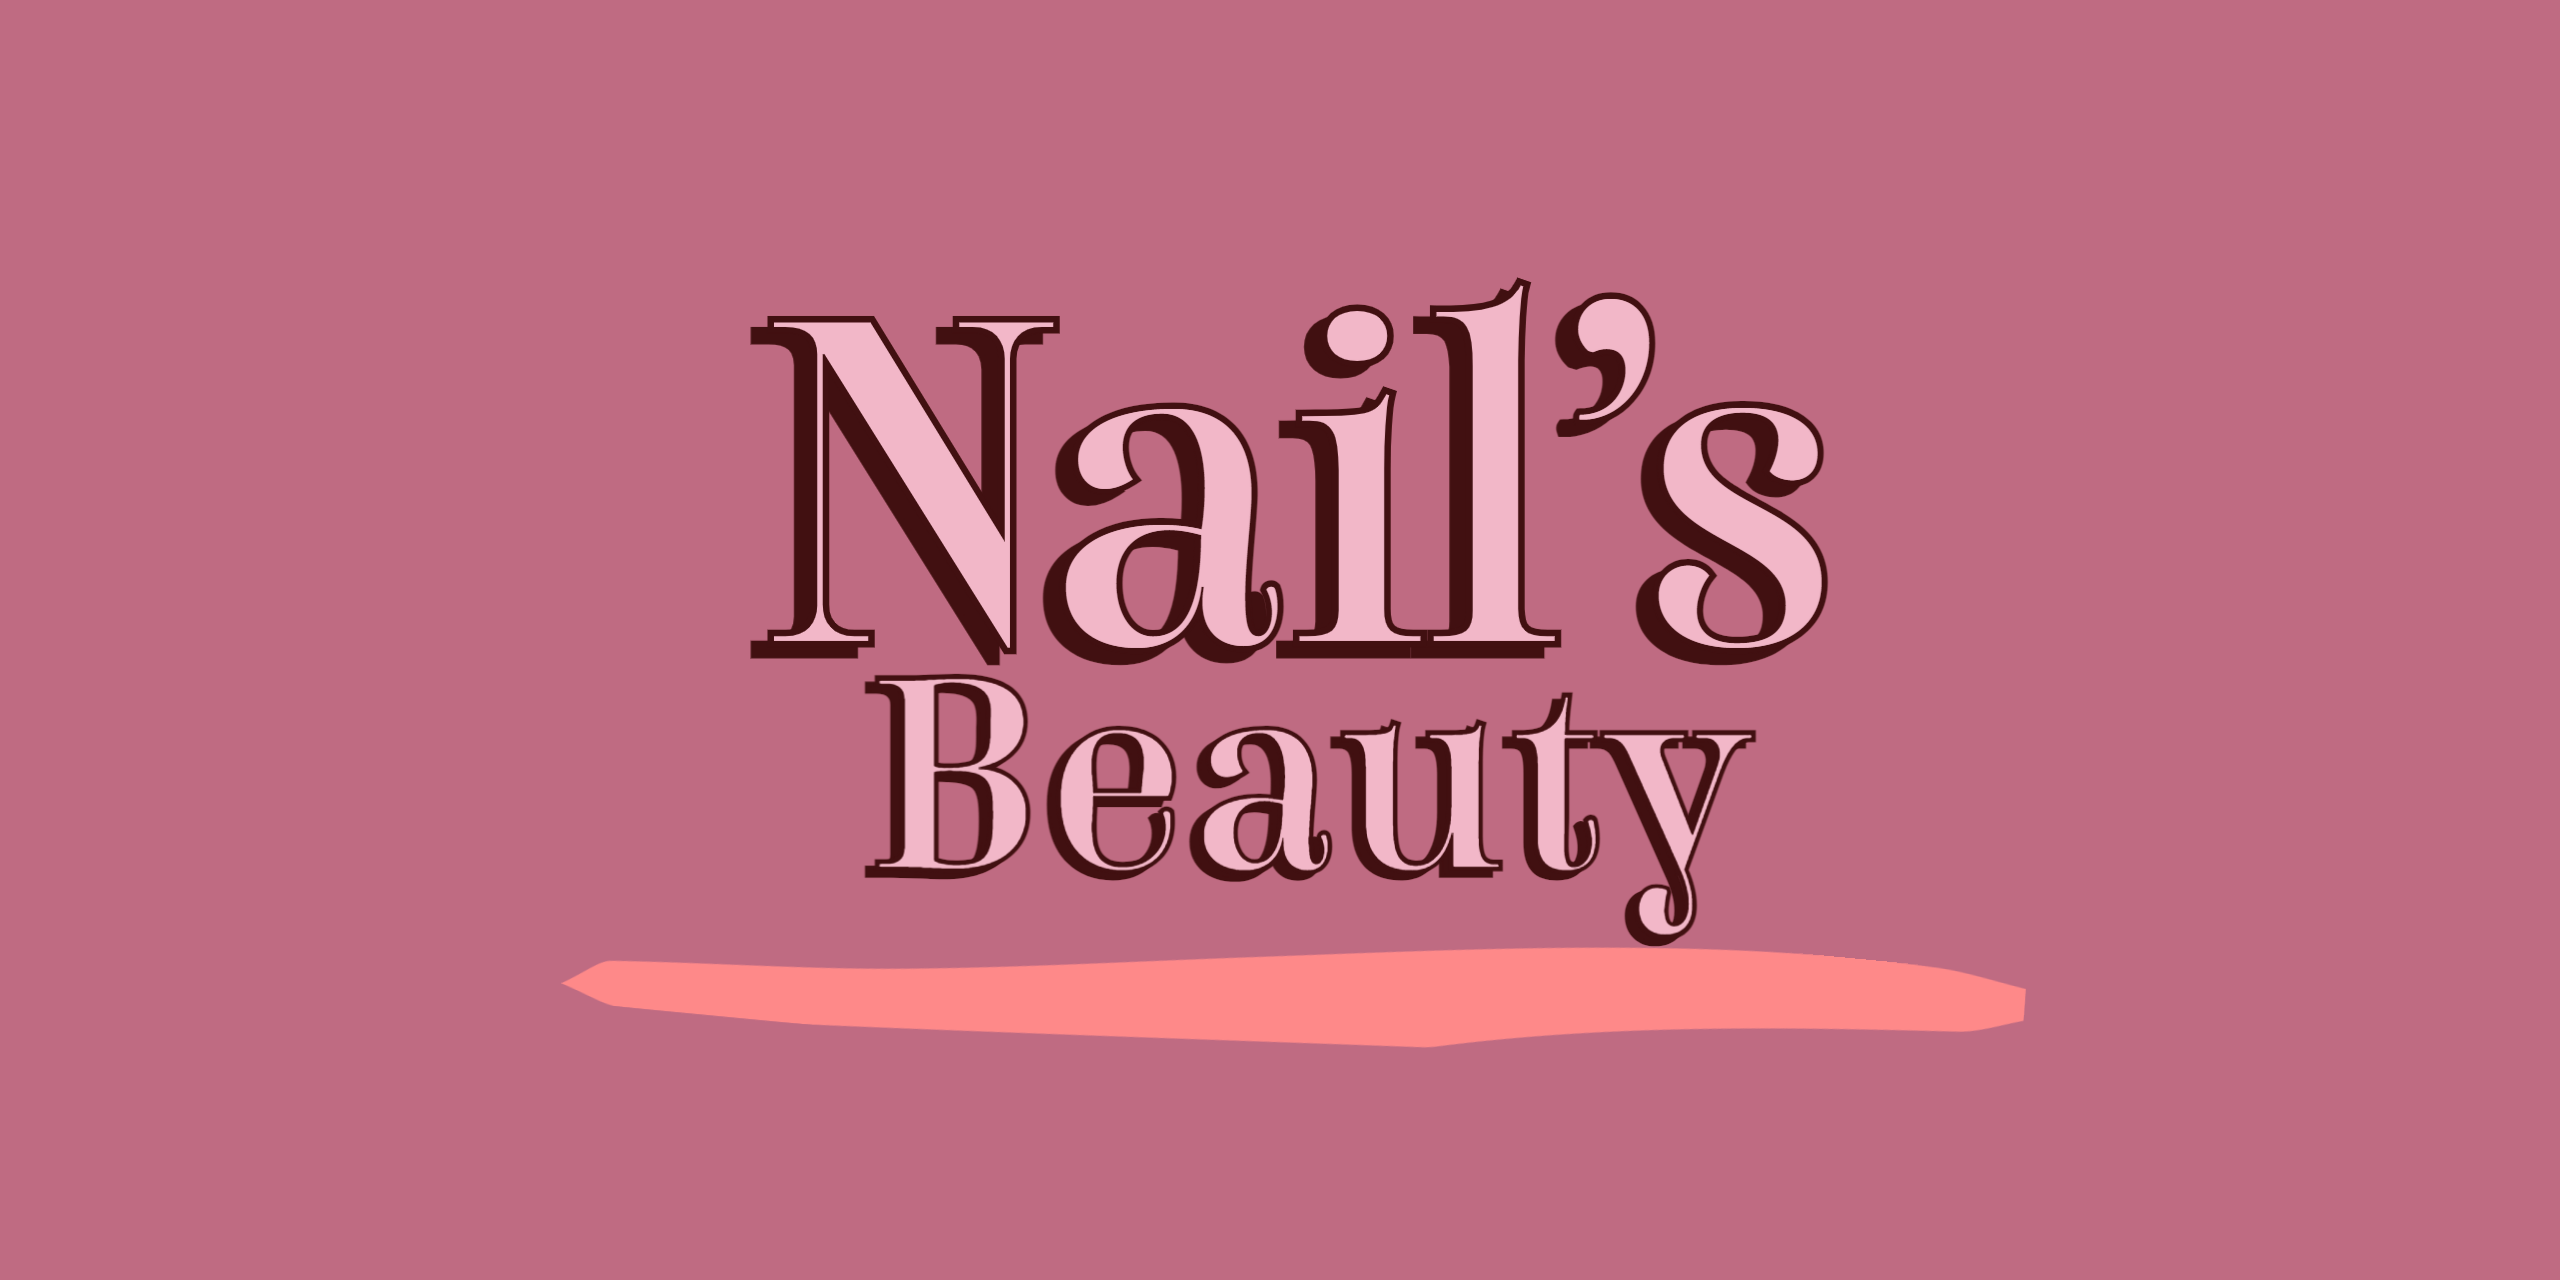 Nail's beauty